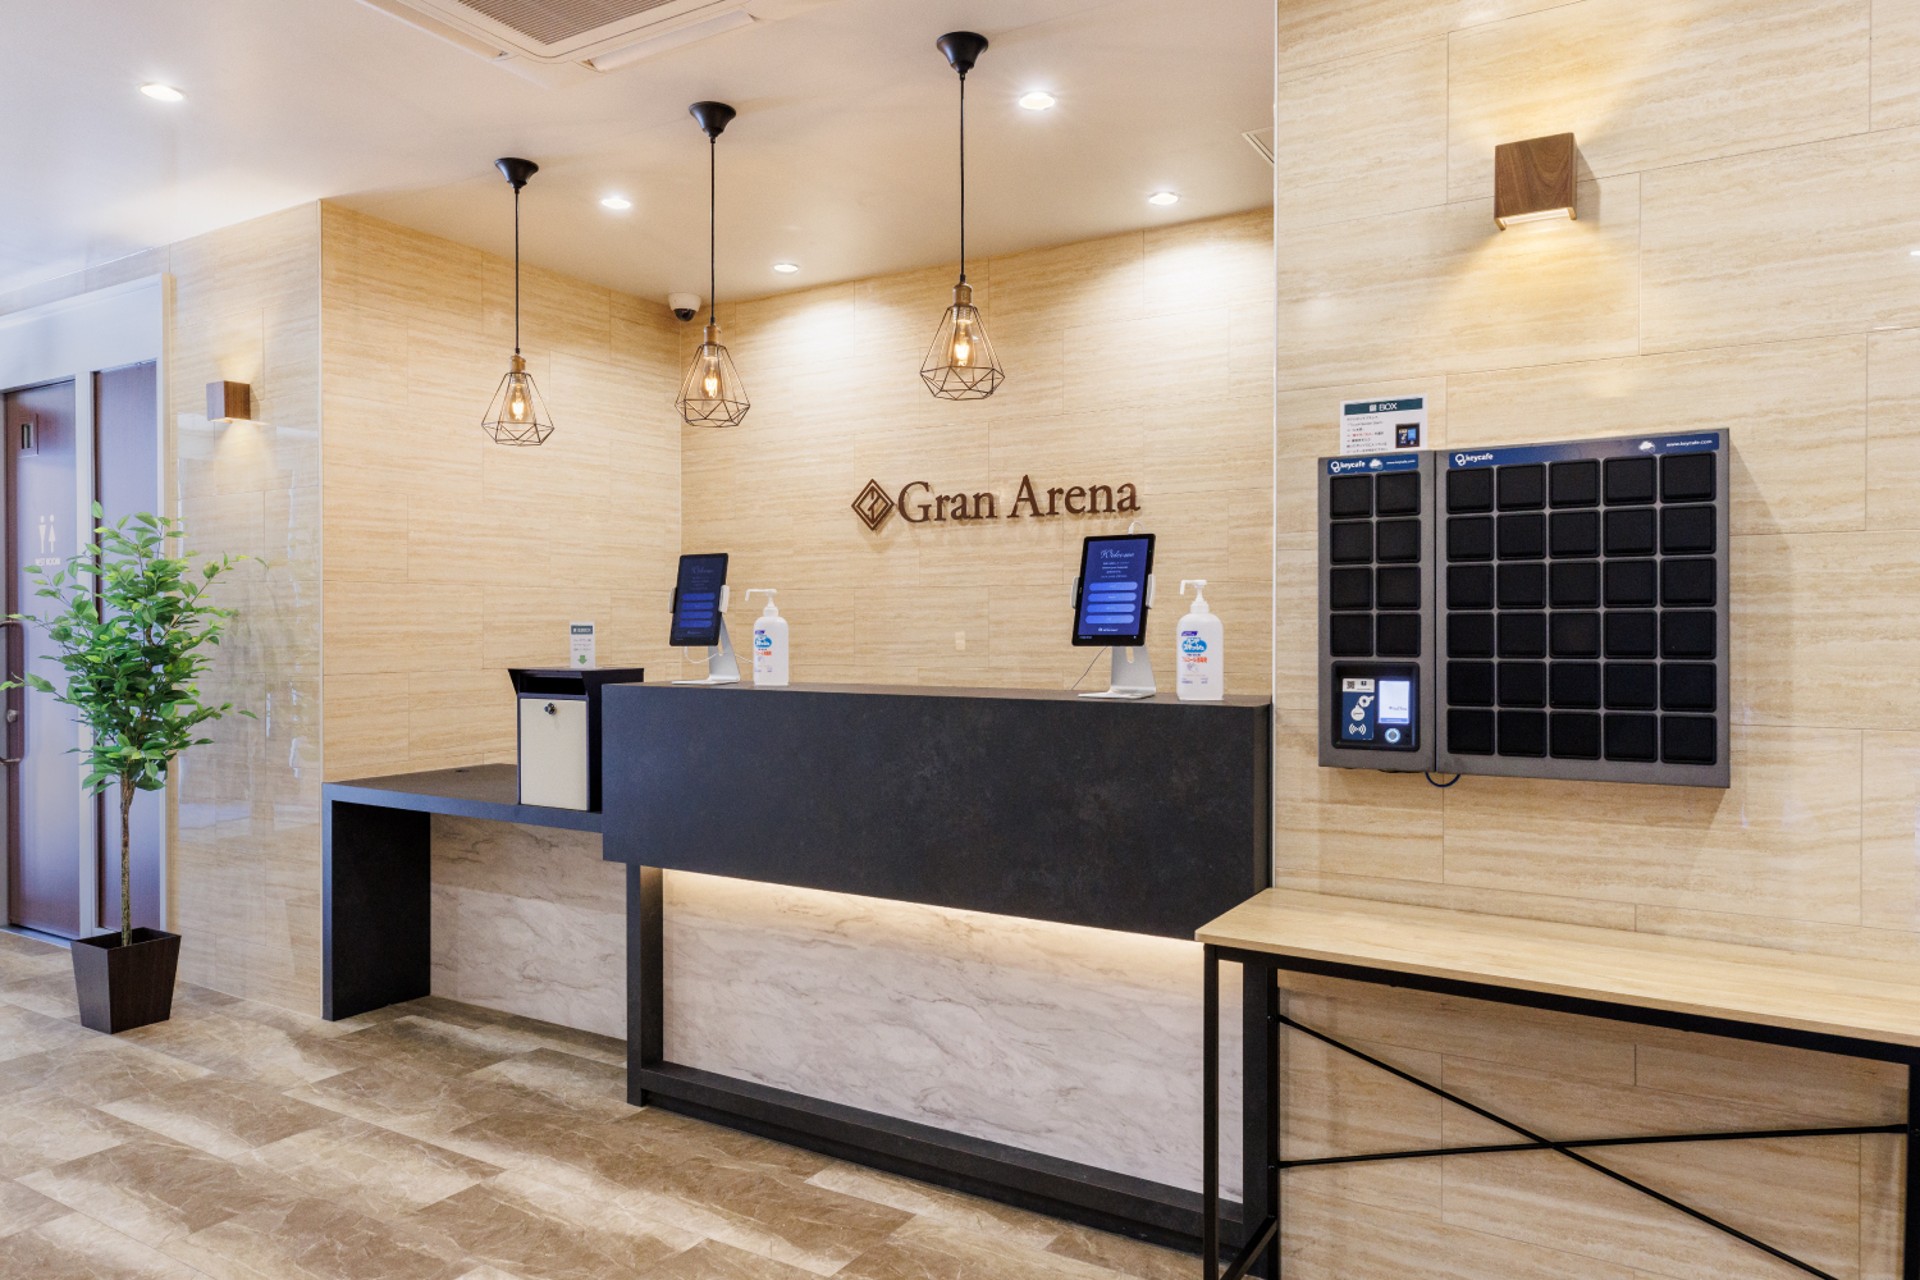 Hotel Gran Arena Reduz Custos e Aumenta a Satisfação dos Hóspedes com o Keycafe